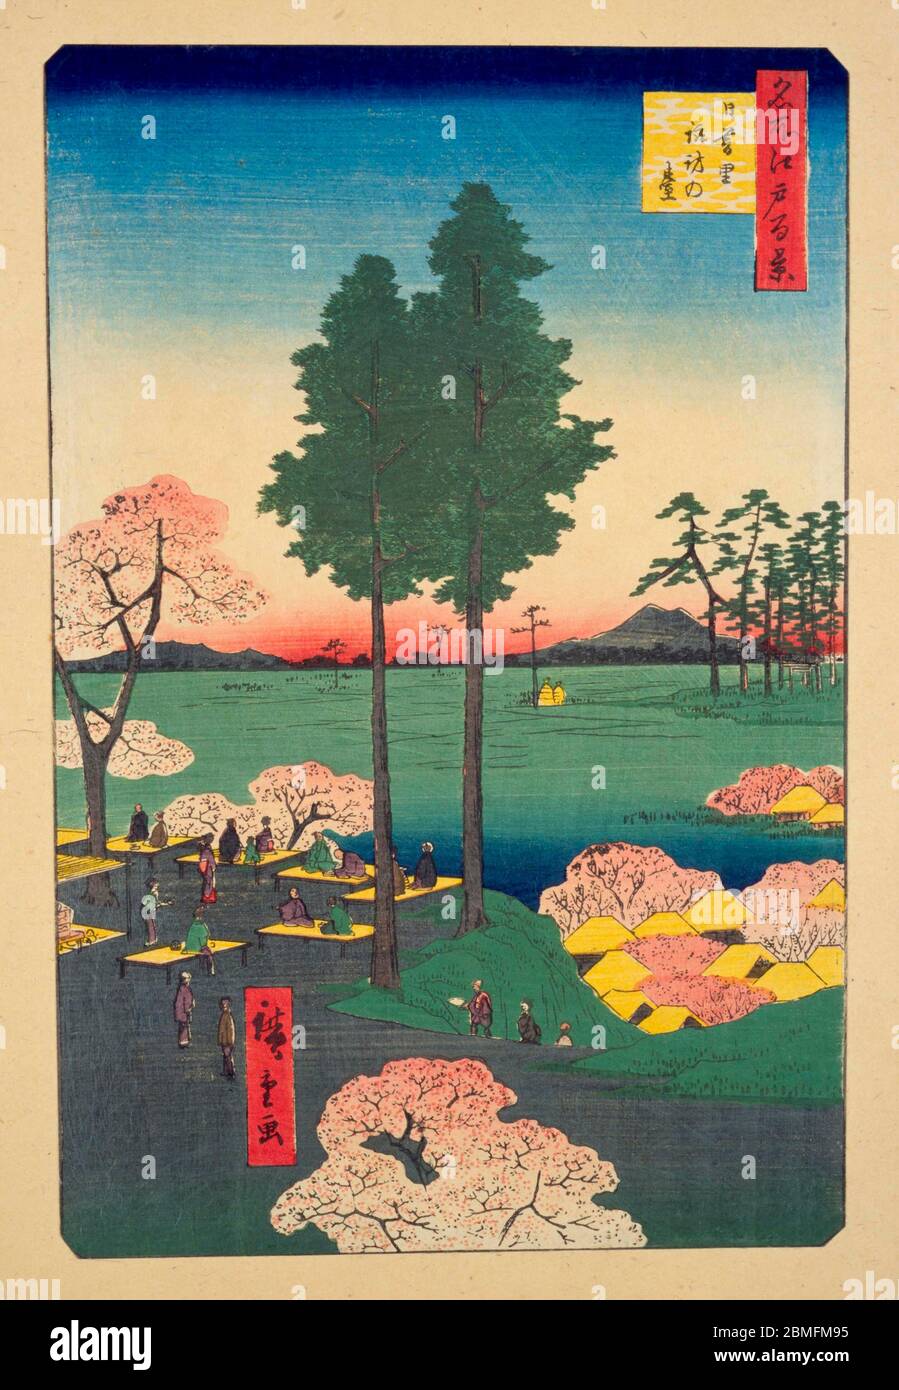 [ 1850er Japan - Kirschblüte im Schrein ] - Kirschblüte auf dem Gelände des Suwa Myojin Schreines in Edo (heute Tokio), 1856 (Ansei 3). Im Hintergrund ist der Berg Tsukuba zu sehen. Dieser Holzschnitt ist Bild 15 in hundert berühmten Ansichten von Edo (名所江戸百景, Meisho Edo Hyakkei), einer Serie von Ukiyoe Künstler Utagawa Hiroshige (歌川広重, 1797–1858) erstellt. Es ist eine von 42 Frühlingsszenen der Serie. Titel: Suwa Bluff in Nippori (日暮里諏訪の台, Nippori Suwanodai) Vintage Ukiyoe Holzschnitt aus dem 19. Jahrhundert. Stockfoto